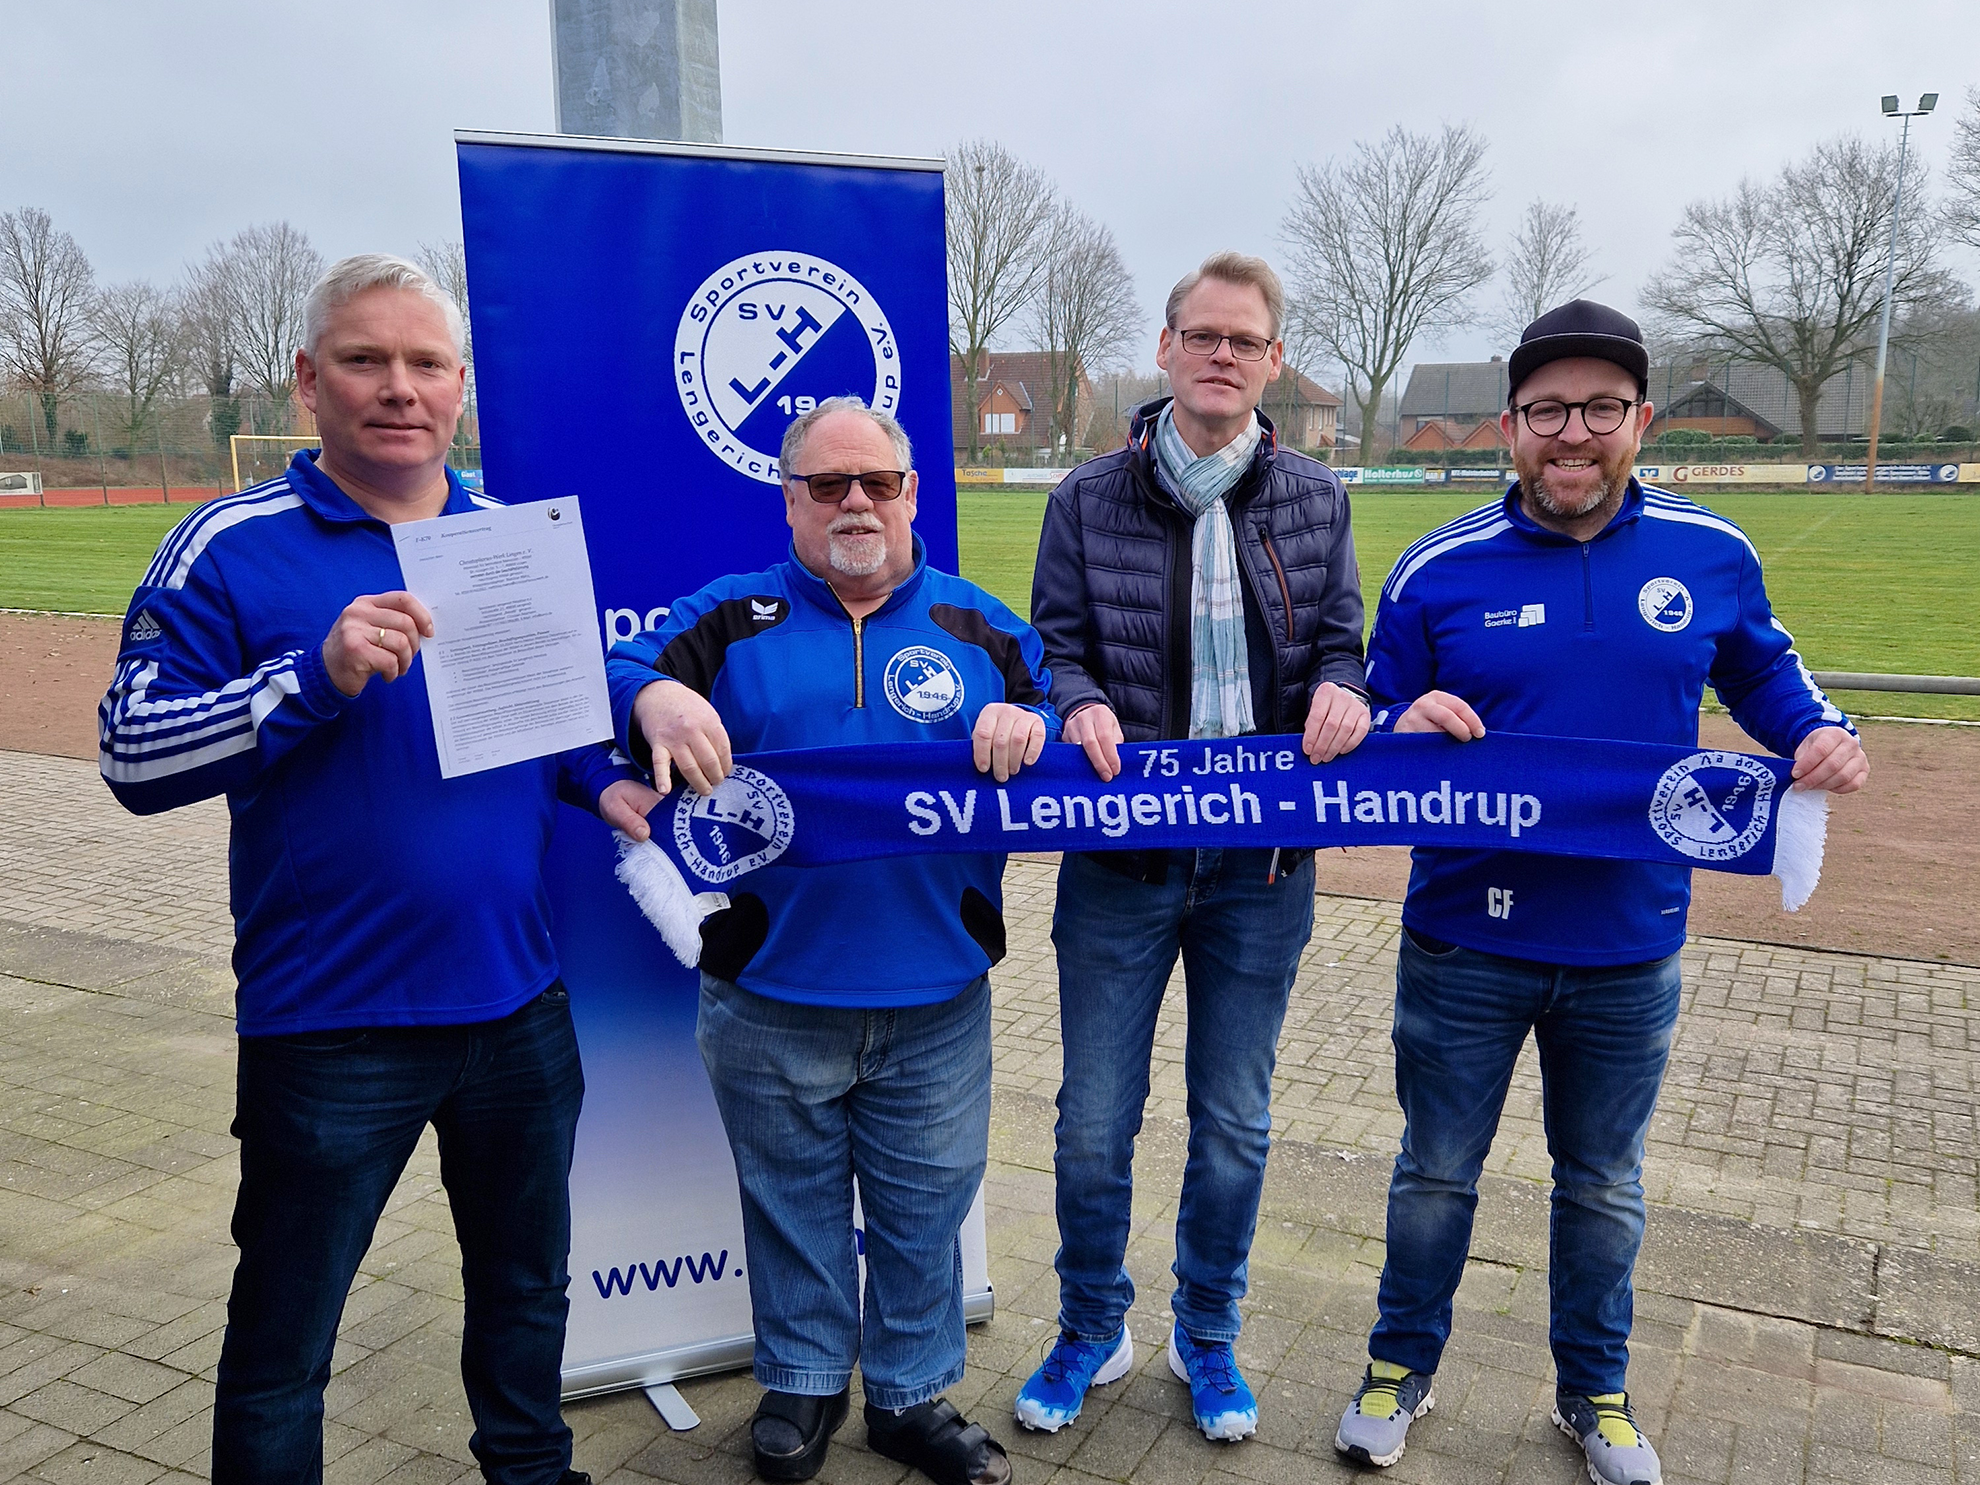 Man sieht vier Männer in blauen Sportjacken vor einem Sportplatz. Ein Mann hält ein Blatt Papier in den Händen, die anderen drei halten gemeinsam einen Vereinsschal.